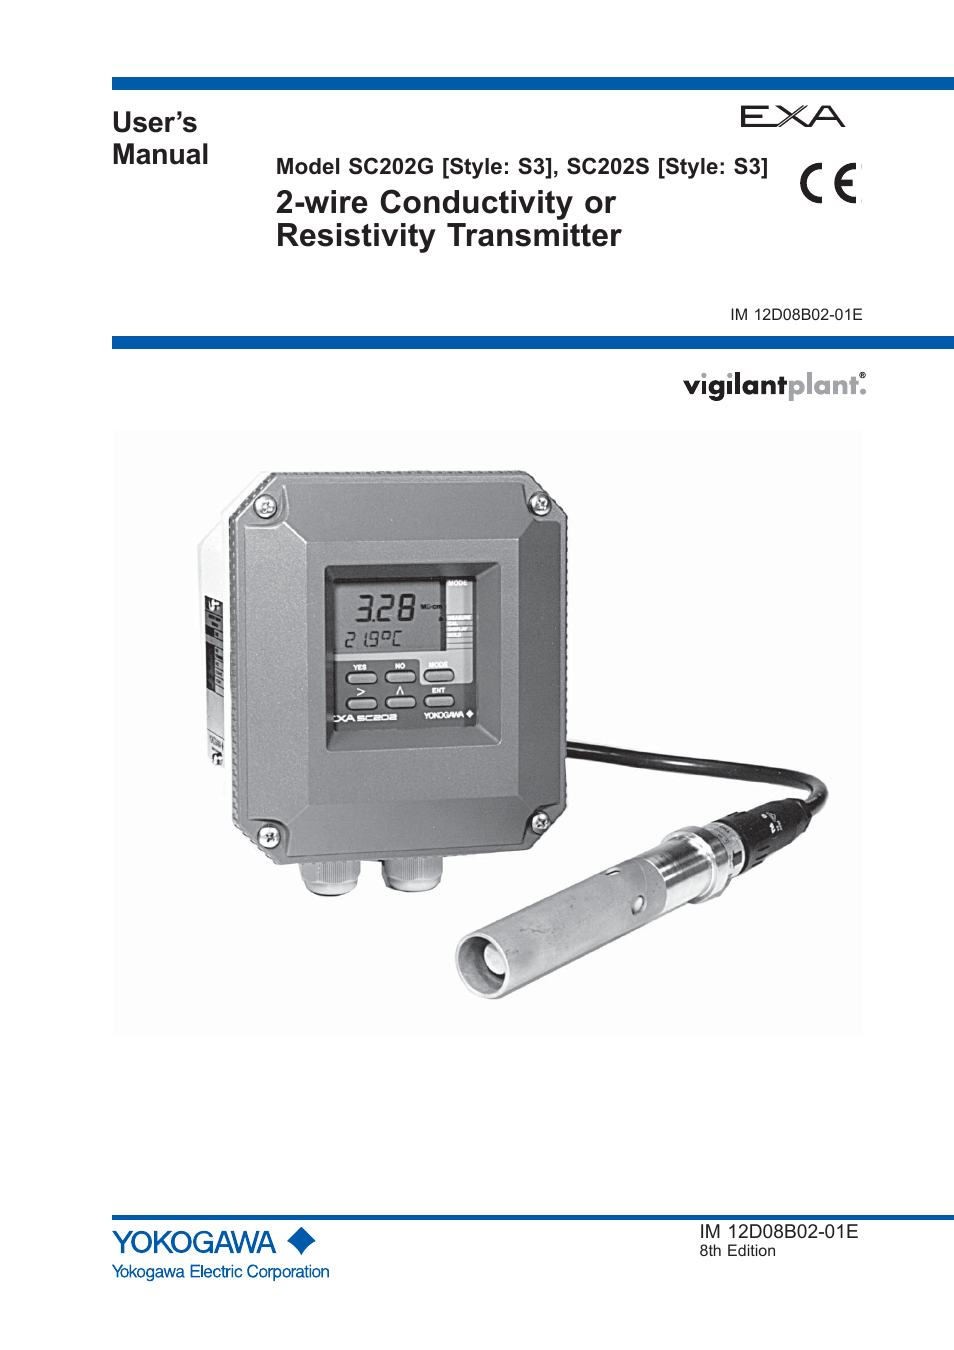 Yokogawa EXA SC202 2-Wire Conductivity Transmitter/Analyzer User Manual | 113 pages